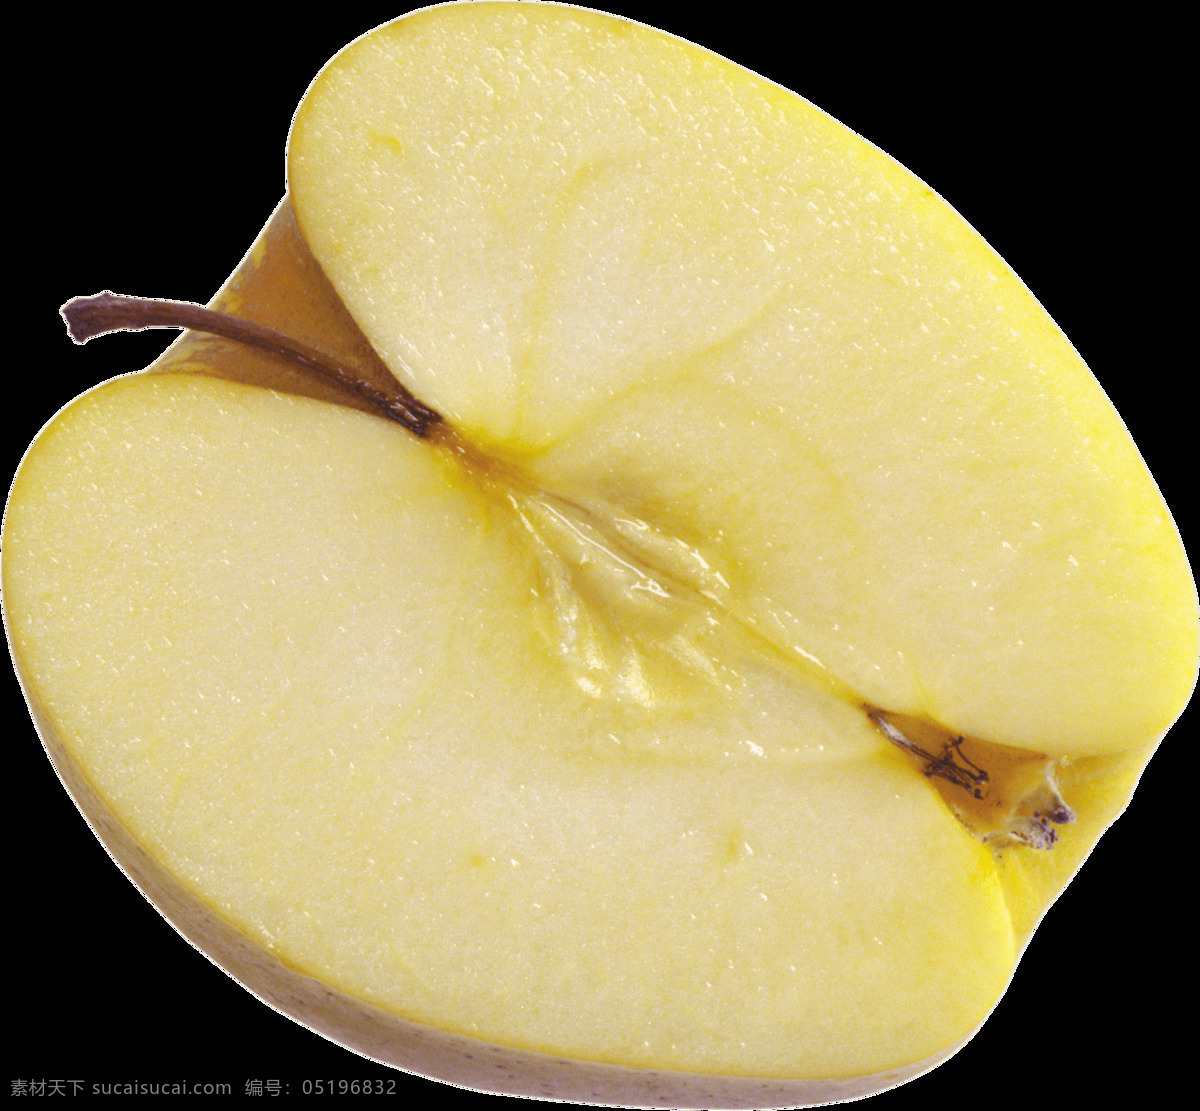 apple 黄色 苹果 免 扣 缤纷夏日 黄苹果 免抠水果素材 清凉夏日 热带水果 蔬菜水果 水果夏日 透明 背景 水果 夏日水果